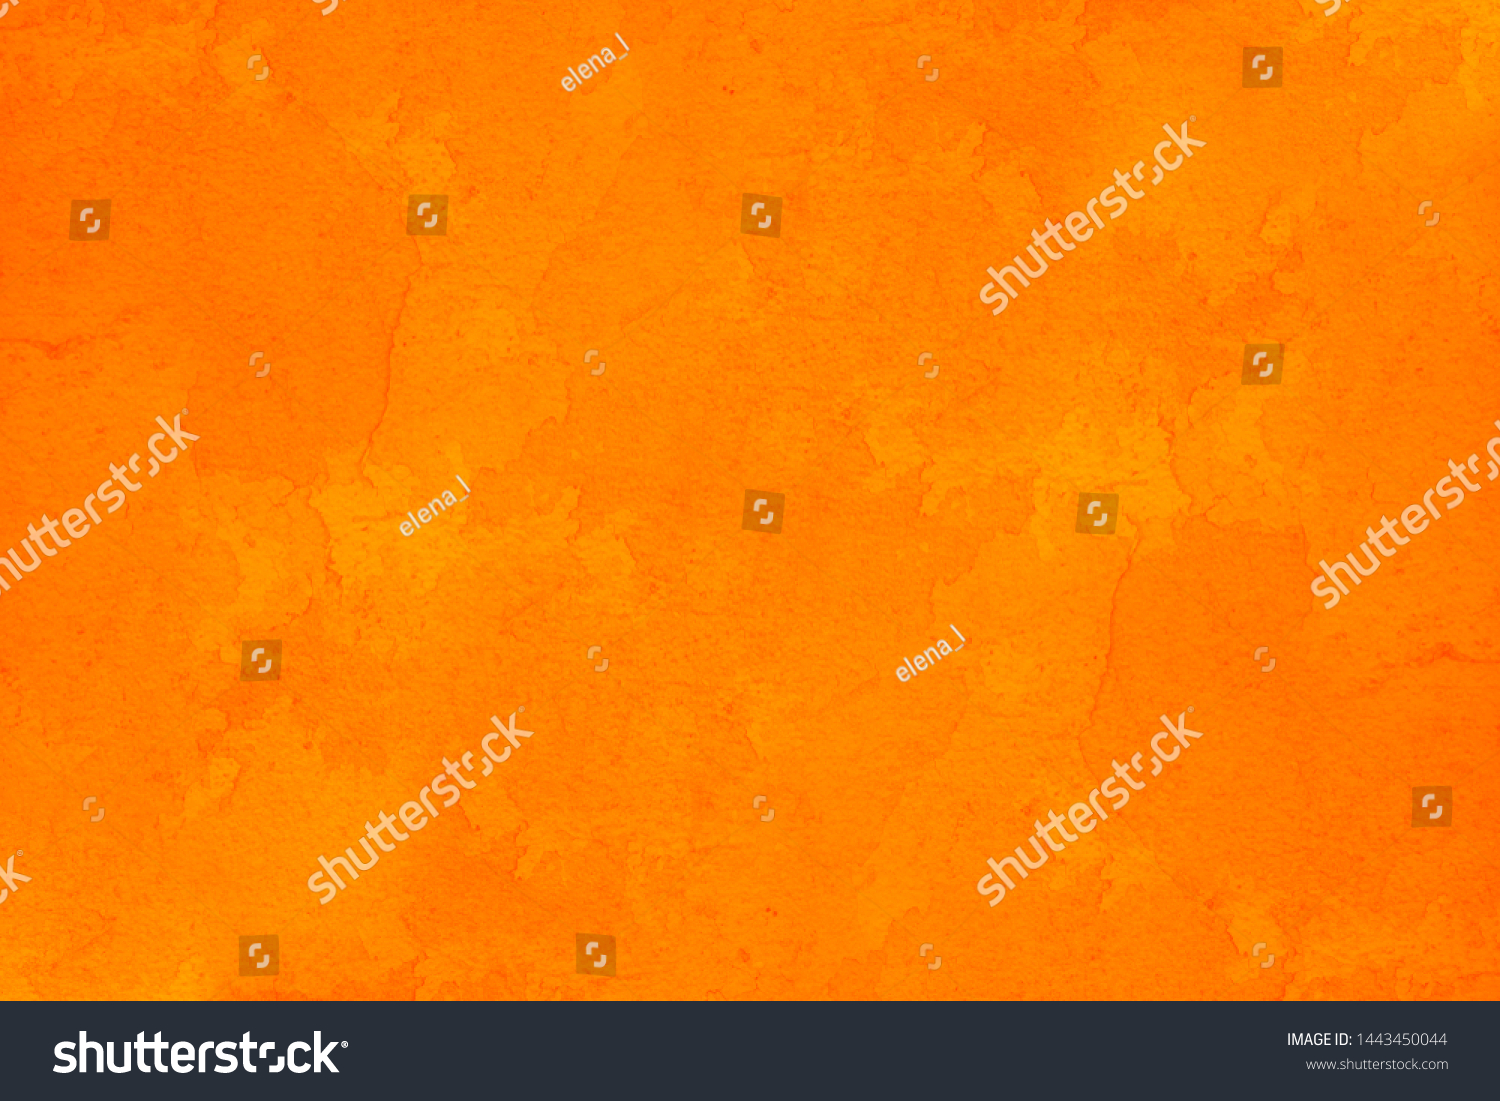 abstract orange grunge background texture #1443450044